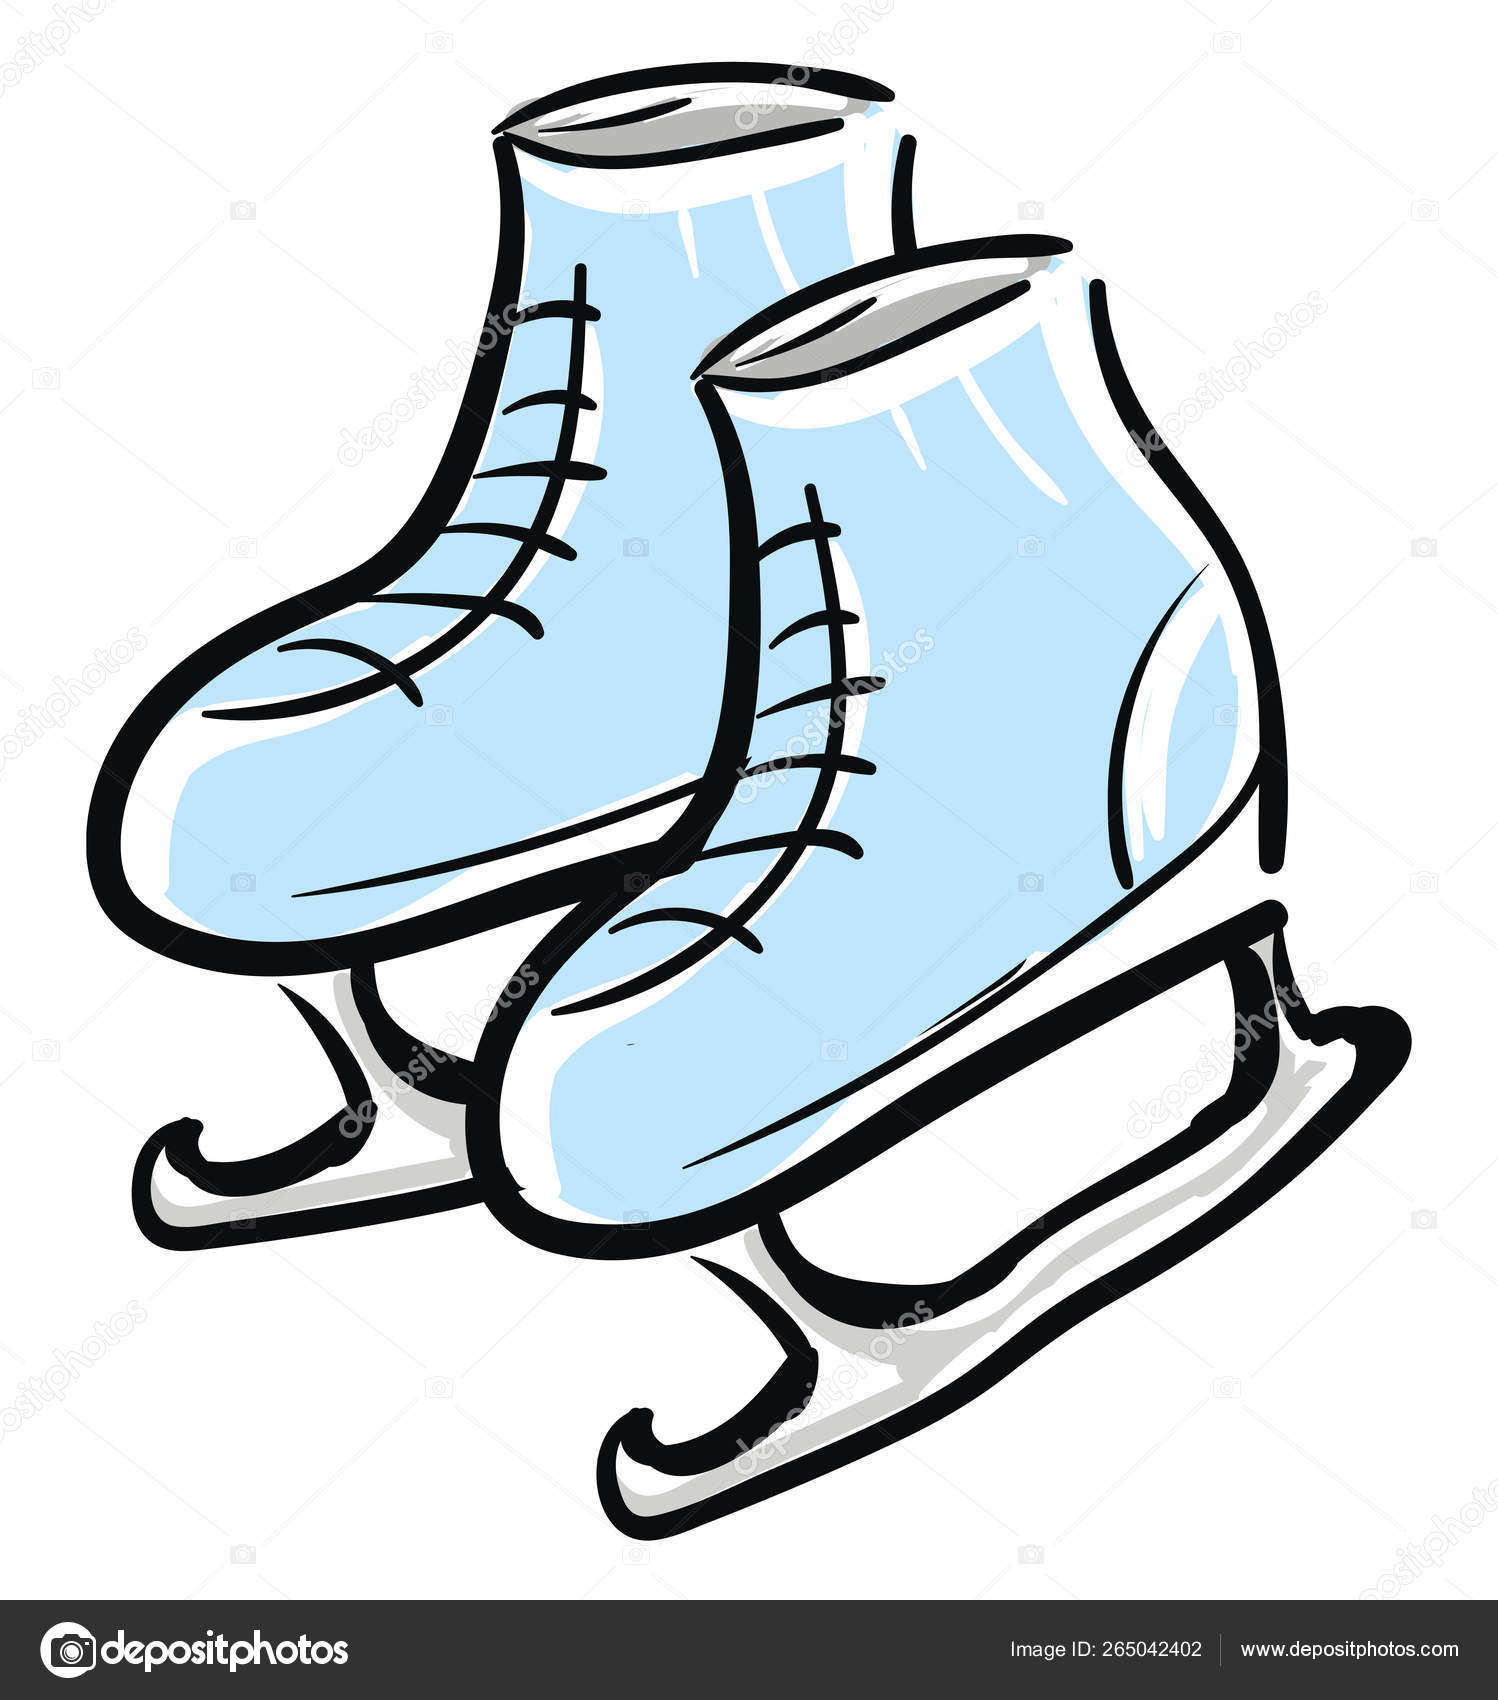 paire de patins à glace bleus. patins artistiques. patins à glace